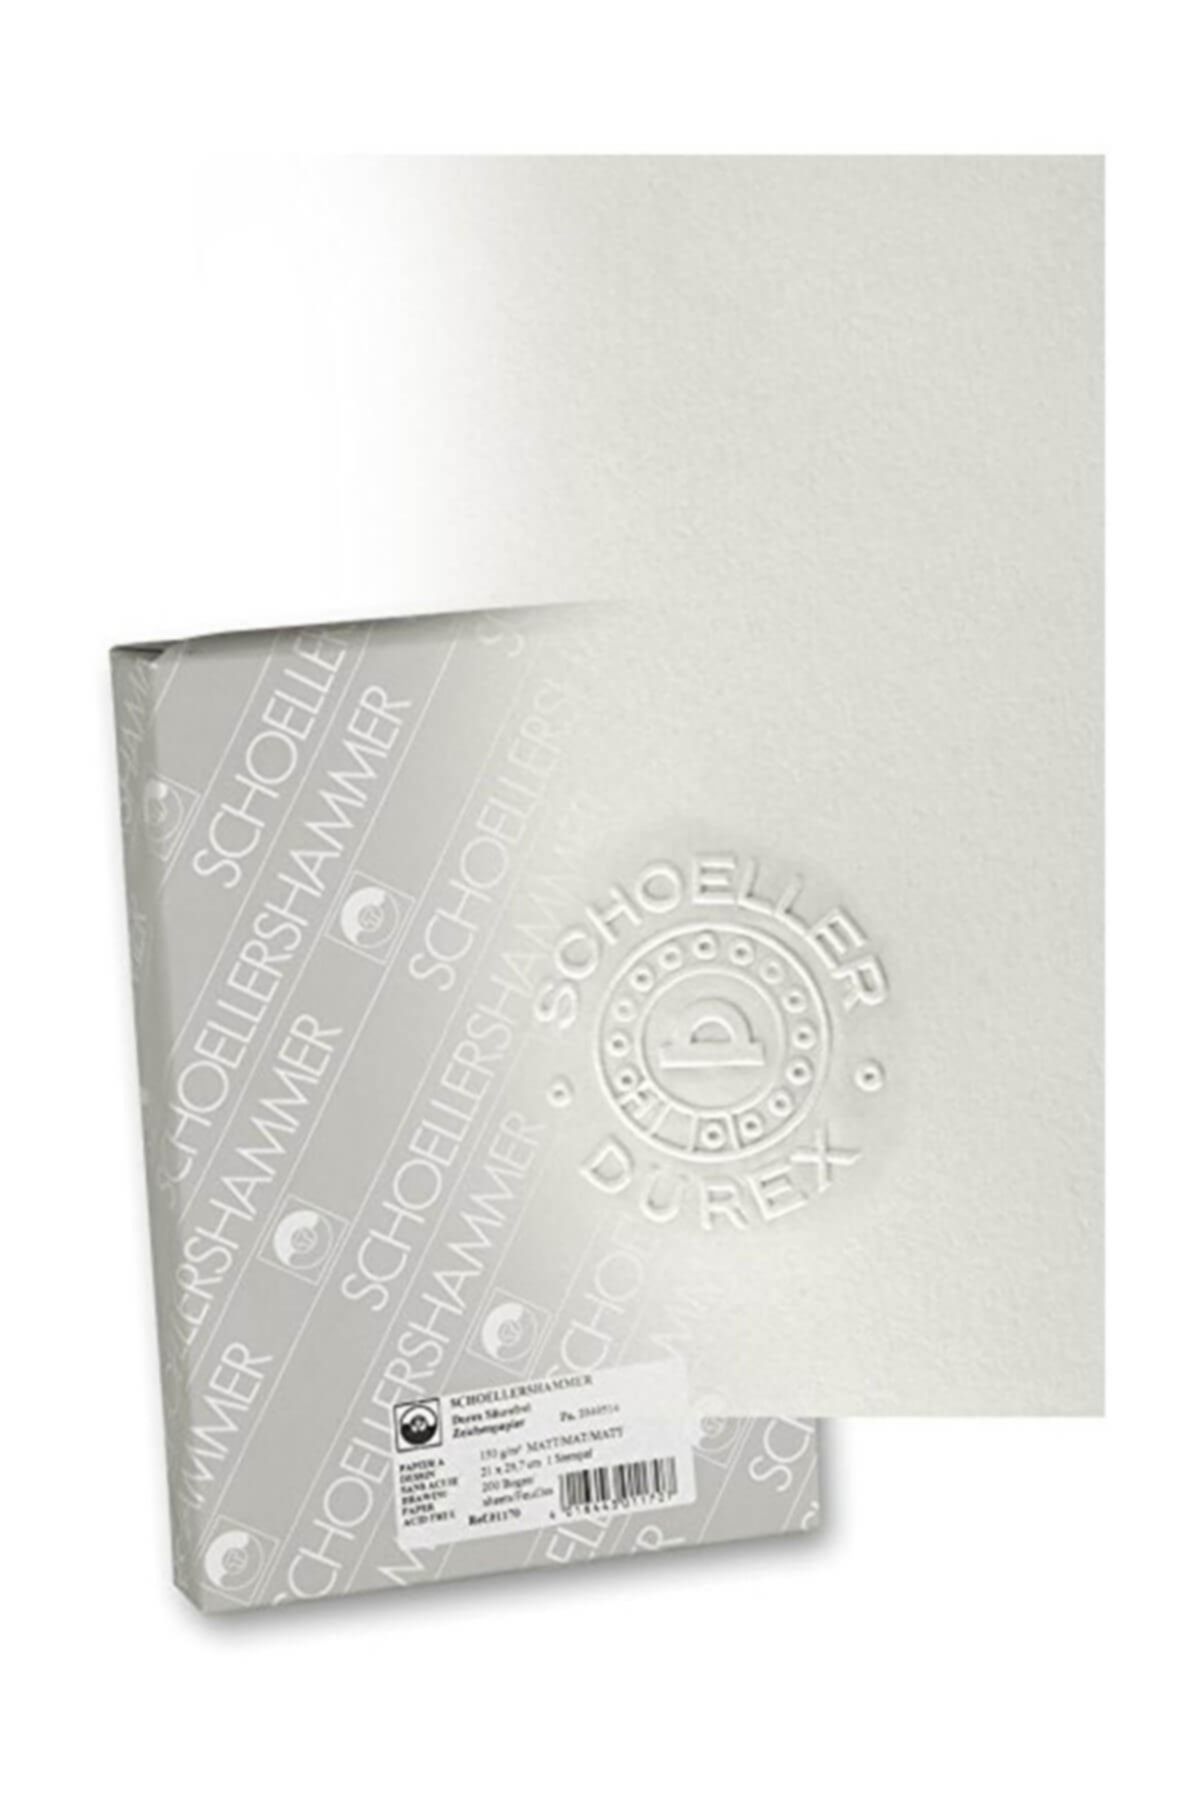 Genel Markalar Schollershammer A4 200 Gram 100 Yaprak Durex Teknik Resim Kağıdı